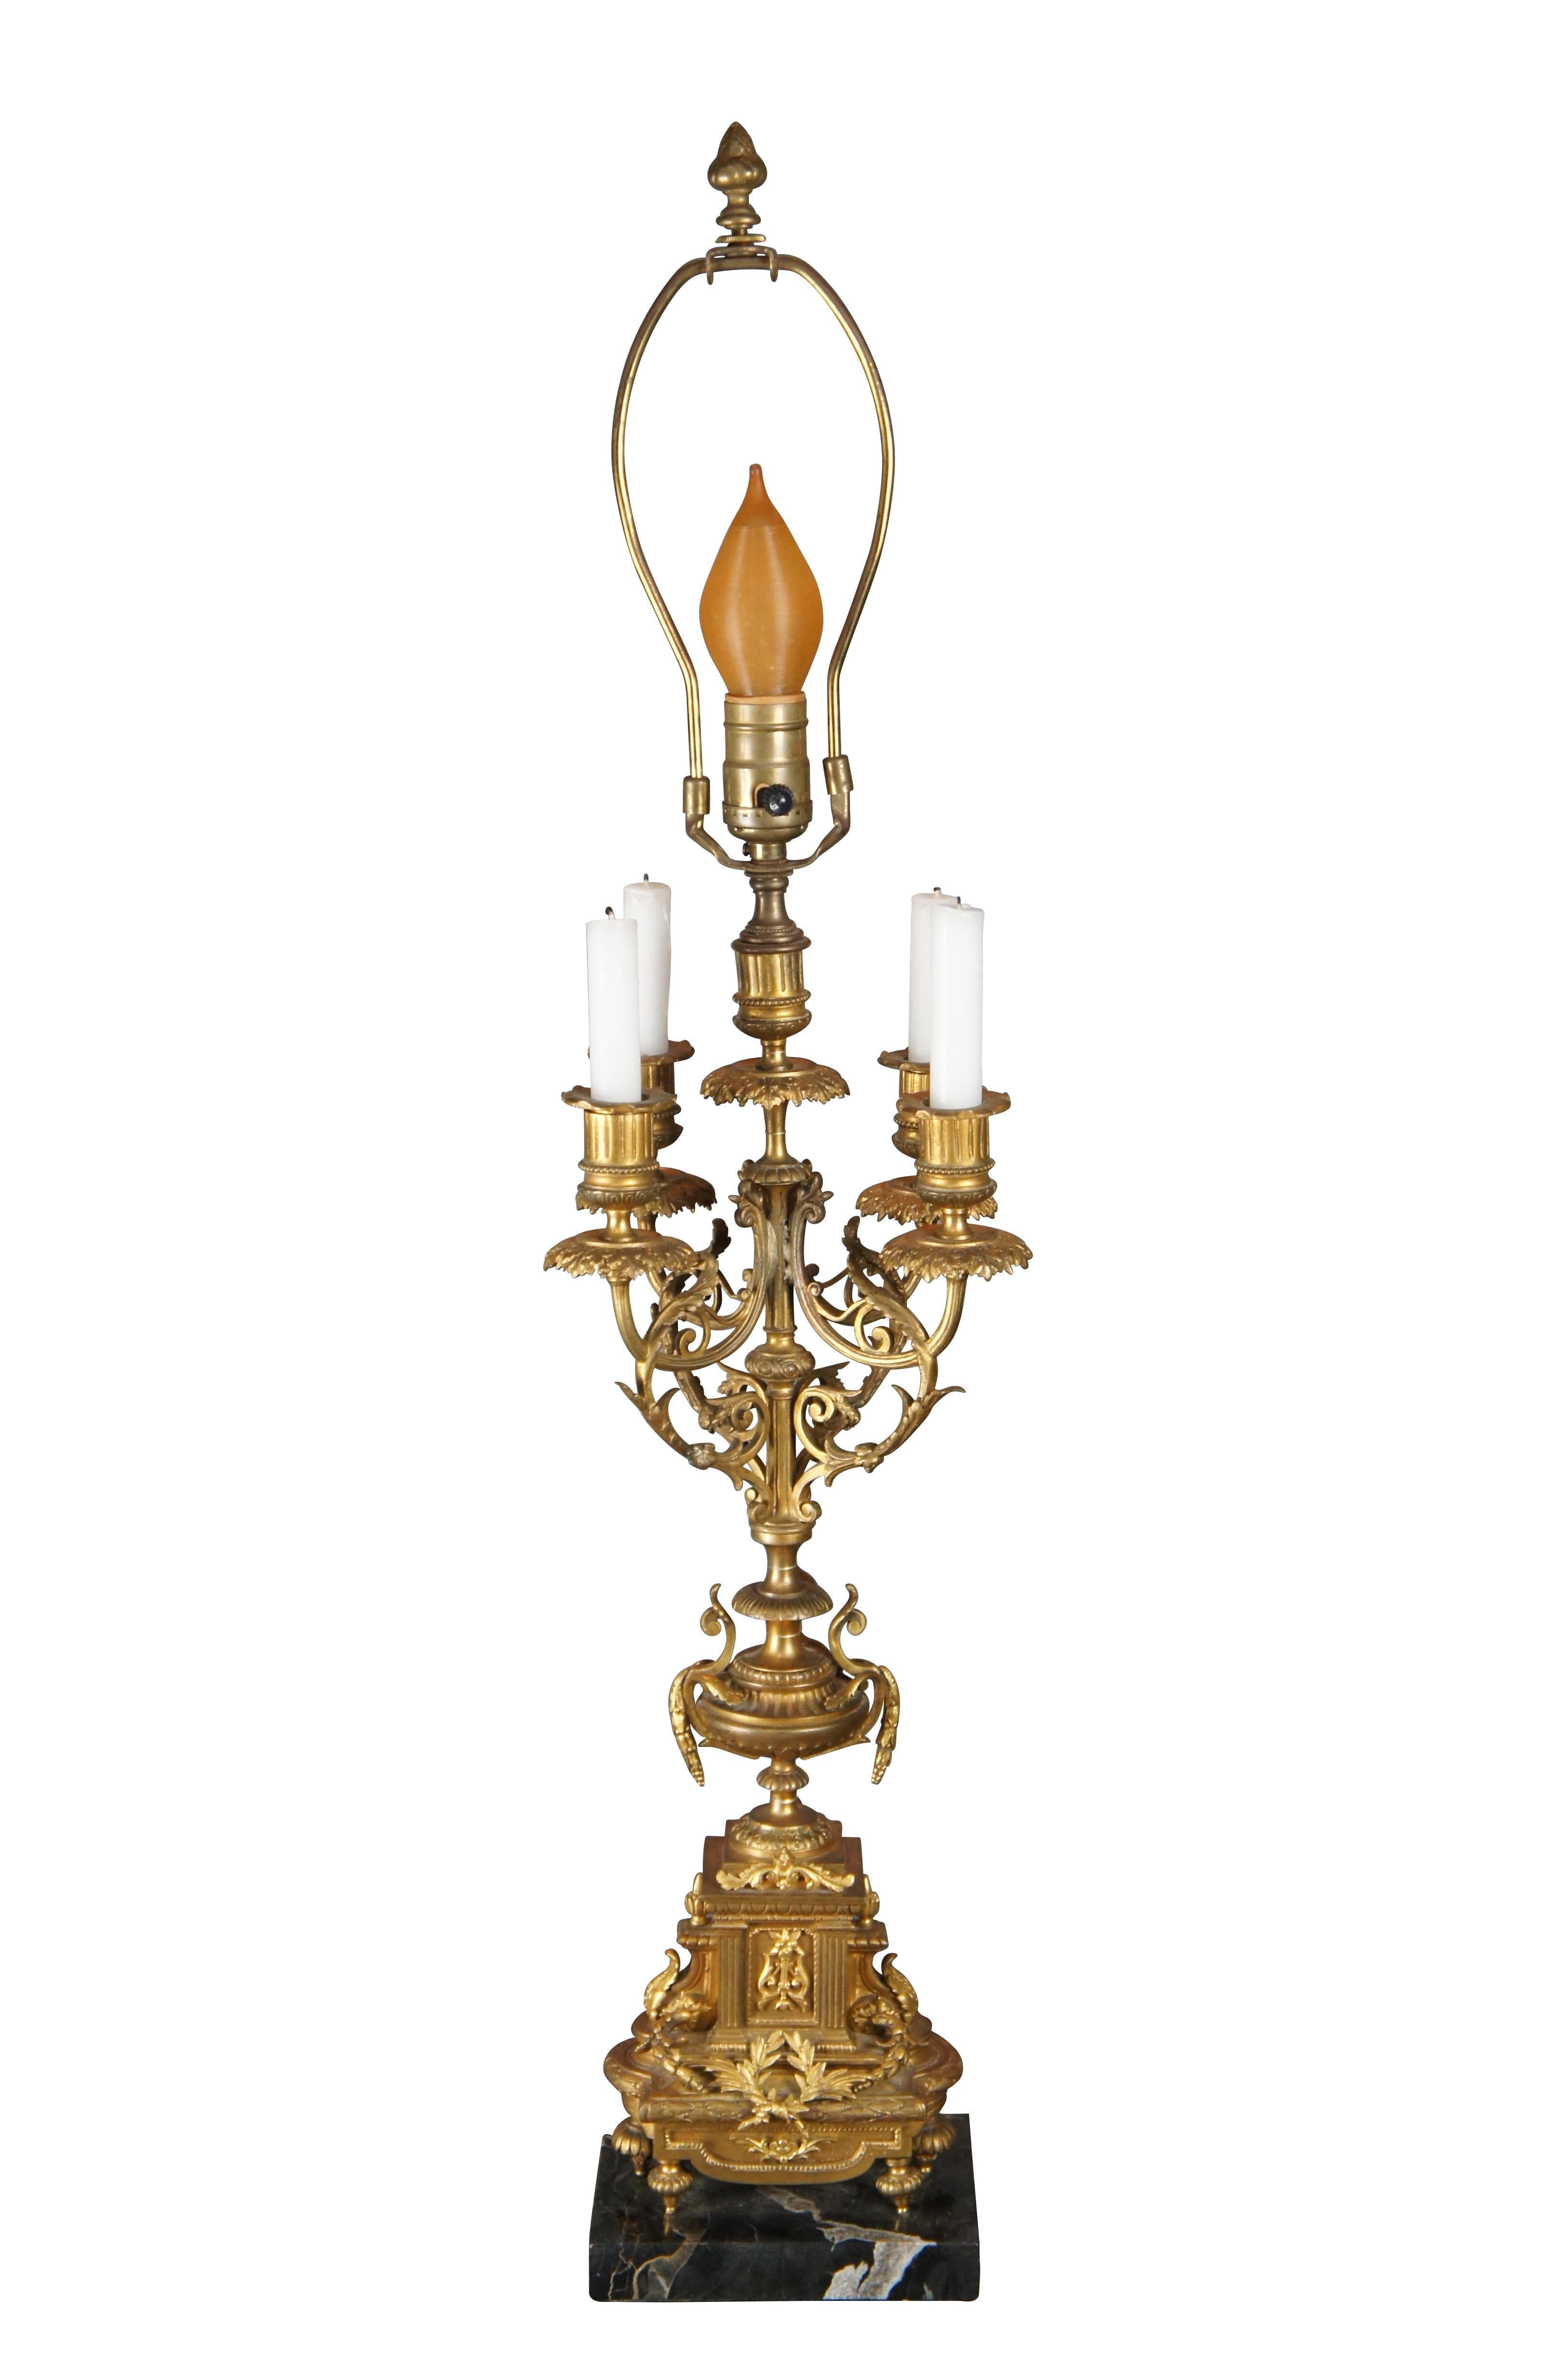 Eine elegante französische Louis XVI-Kandelaberlampe. Vergoldetes Messing mit klassischen Motiven auf einem Sockel aus schwarzem Marmor. Die Armlehnen sind mit Akanthus-Akzenten und verzierten Tropfschalen versehen. Die Lampe wurde in der Mitte